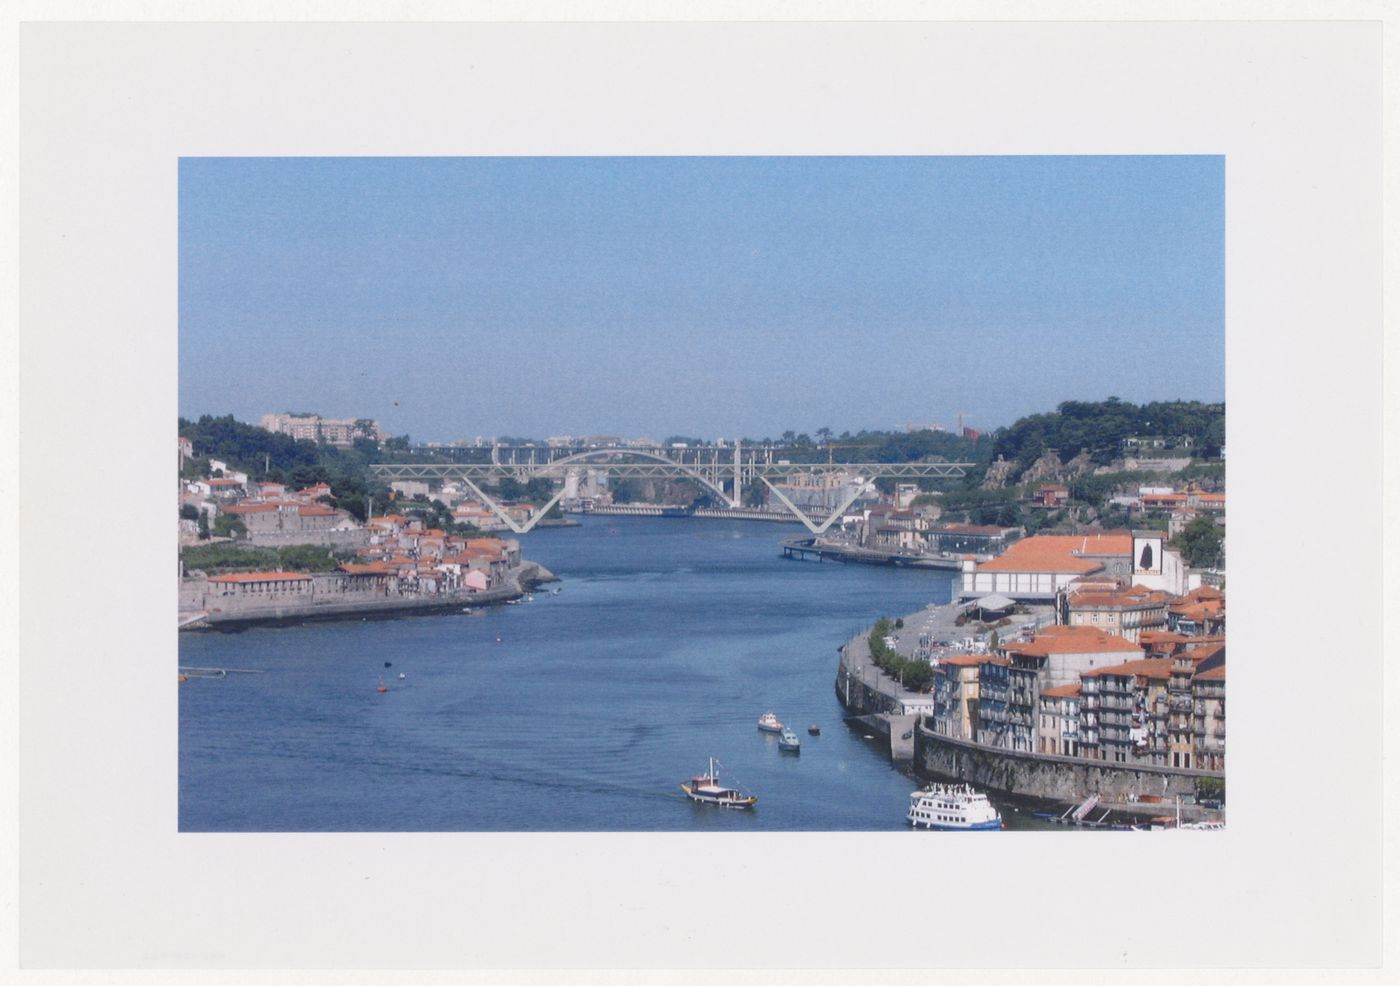 Photomontage for Pólo III da Universidade do Porto e Nova ponte sobre o rio Douro [Bridge over the Douro river], Porto, Portugal